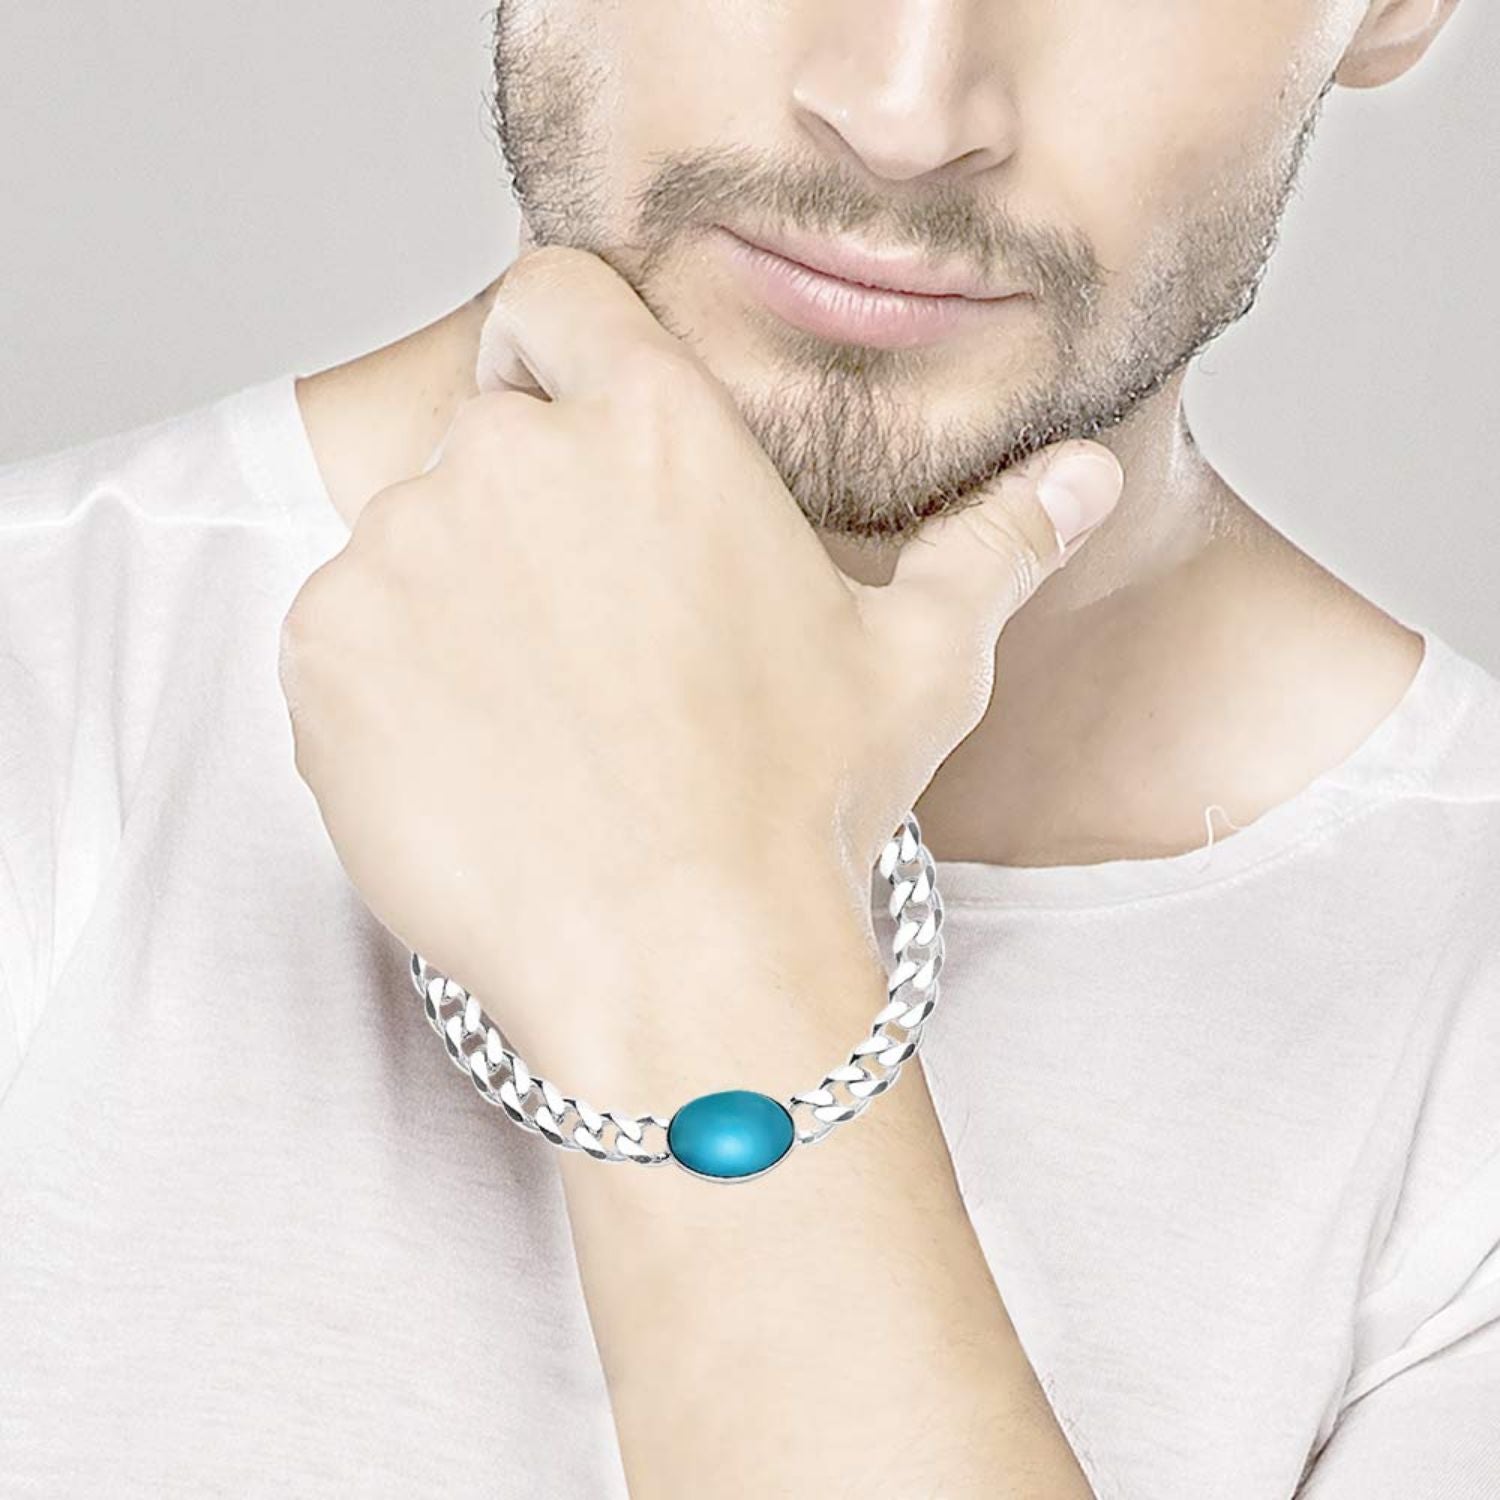 nemichand jewels Stylish Salman Khan Look Kaju Bali (Hoop Earrings) in 92.5  Sterling Silver Jewellery For Men : Amazon.in: Fashion